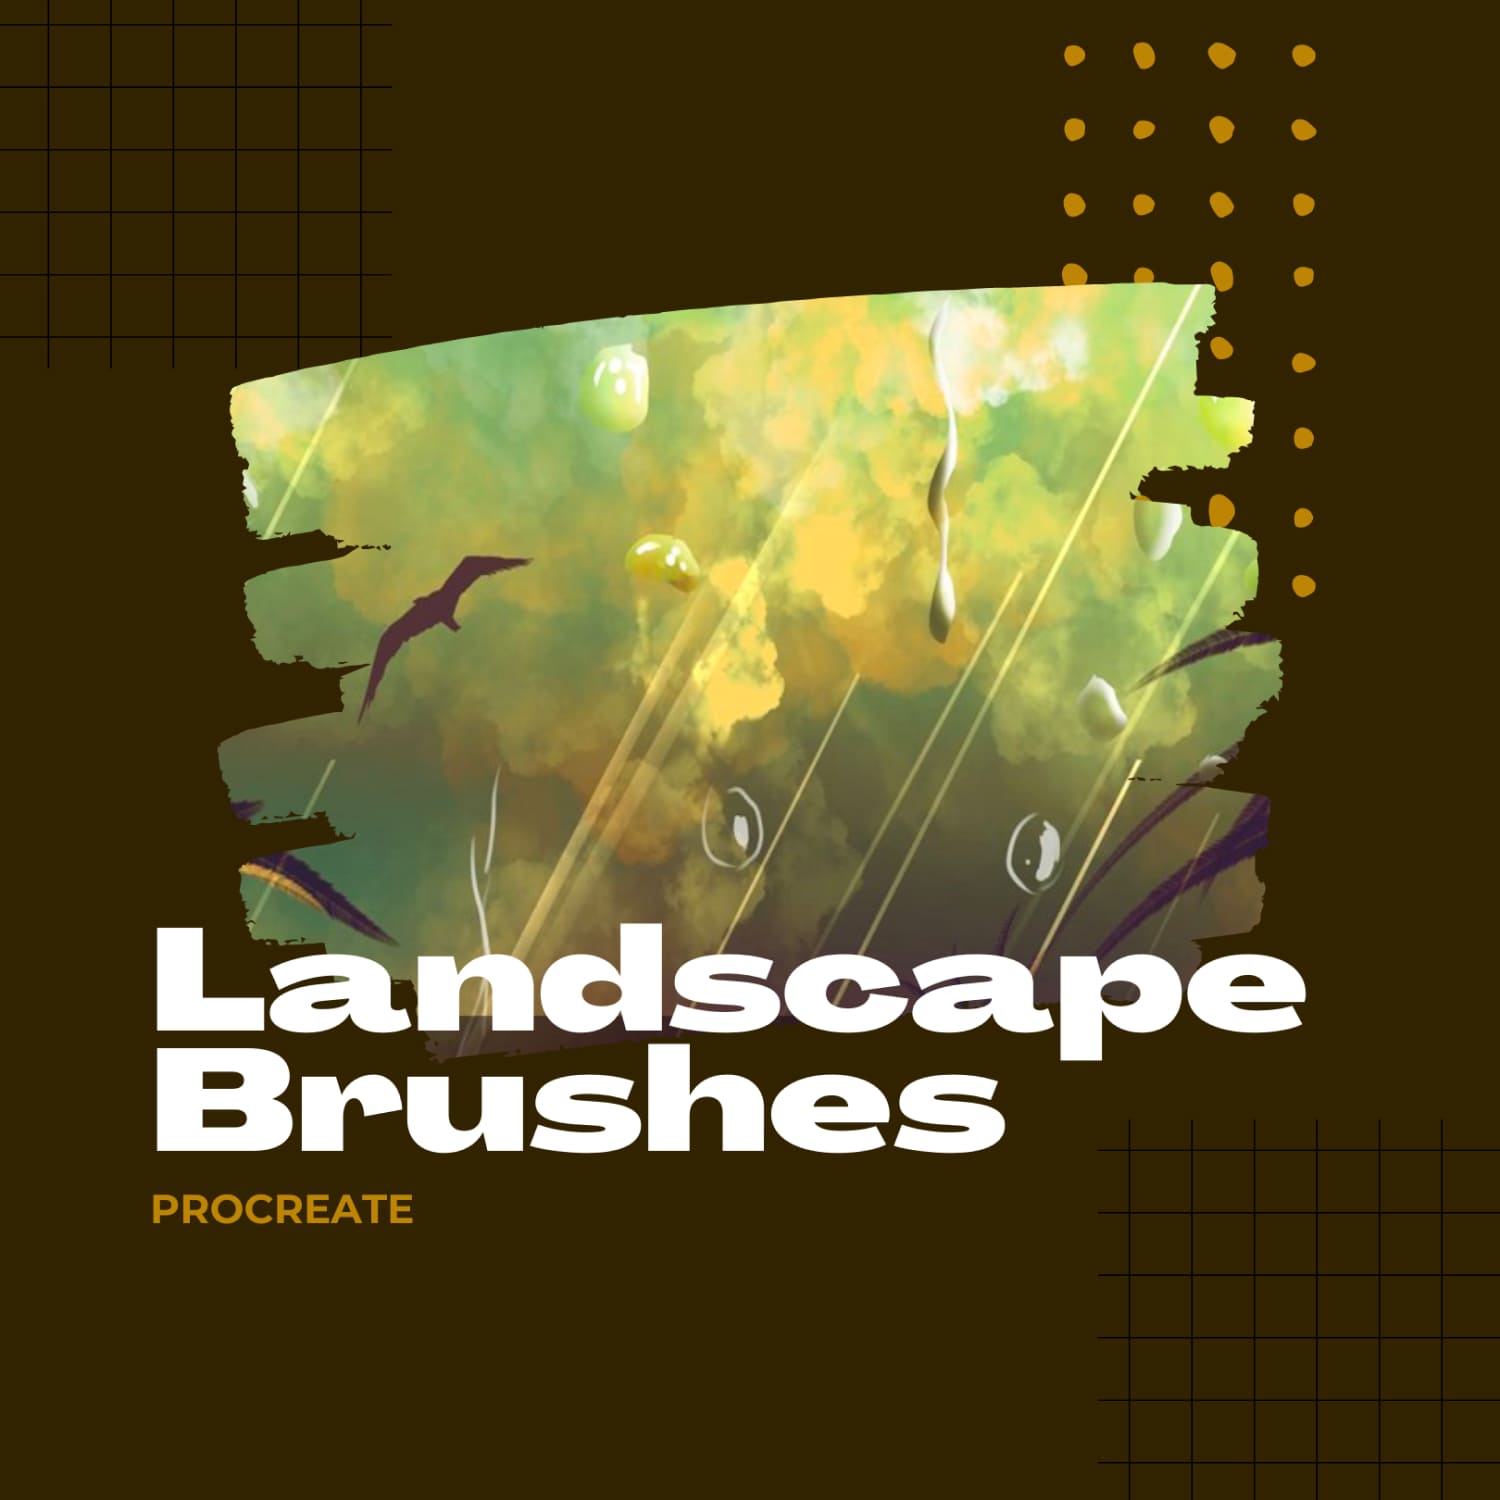 landscape procreate brushes free